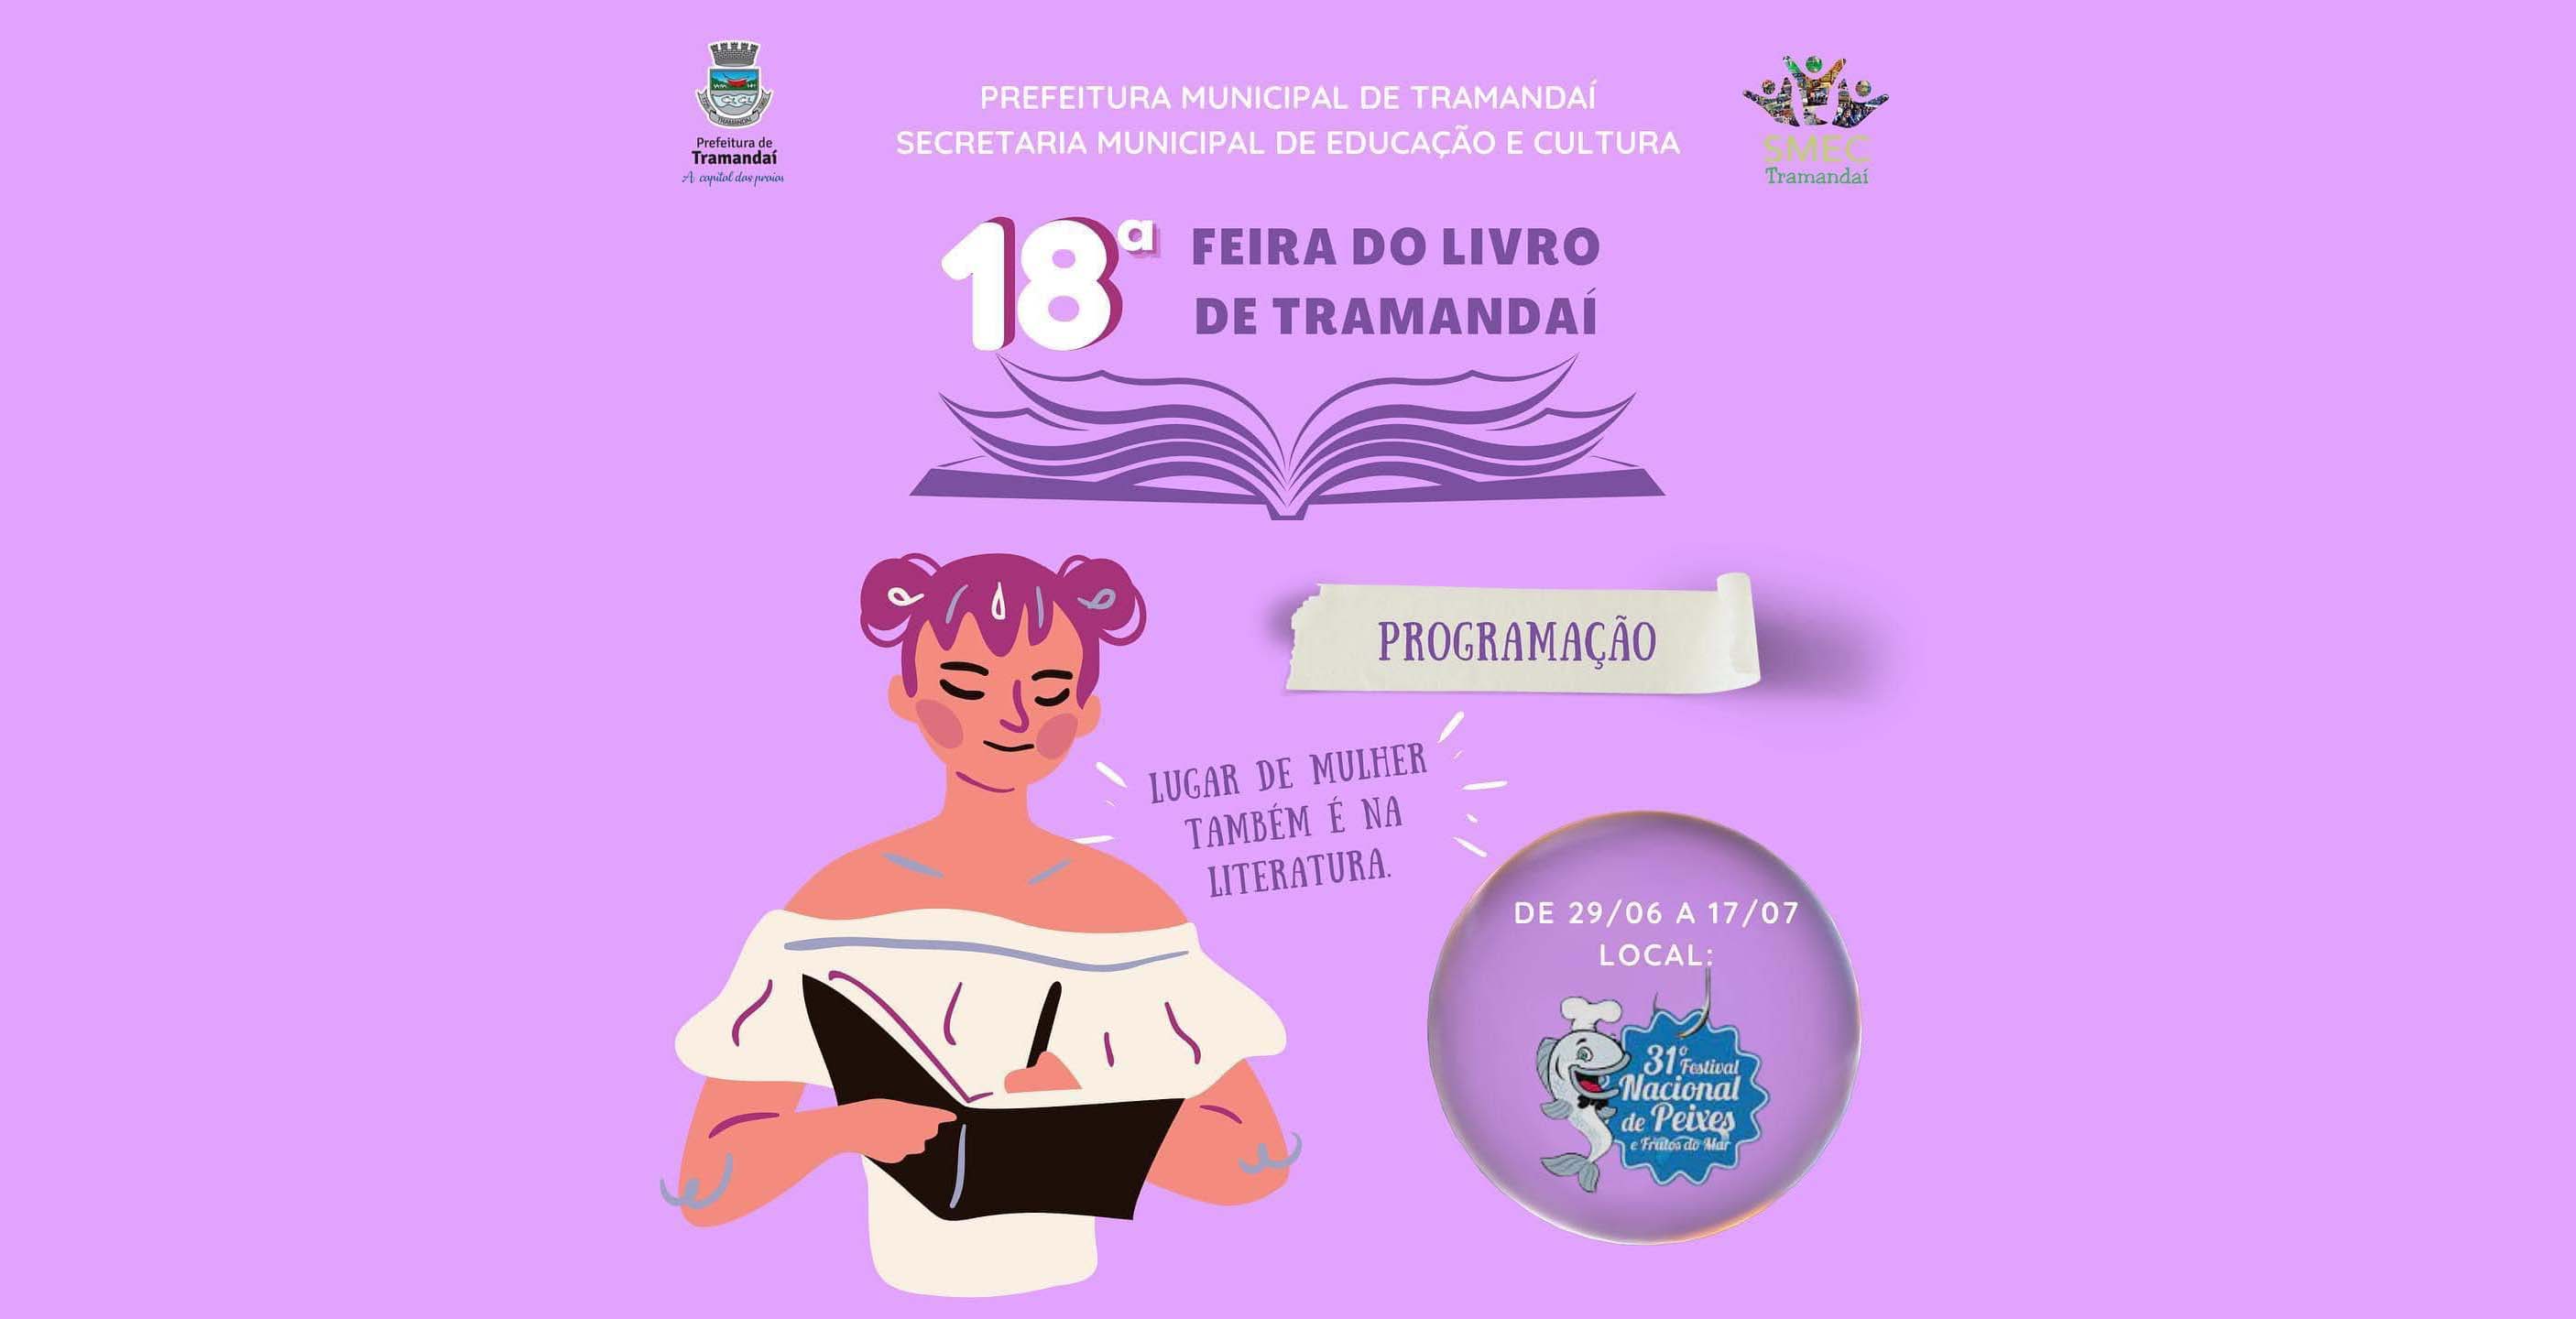 Confira a programação completa da 18ª Feira do Livro de Tramandaí!